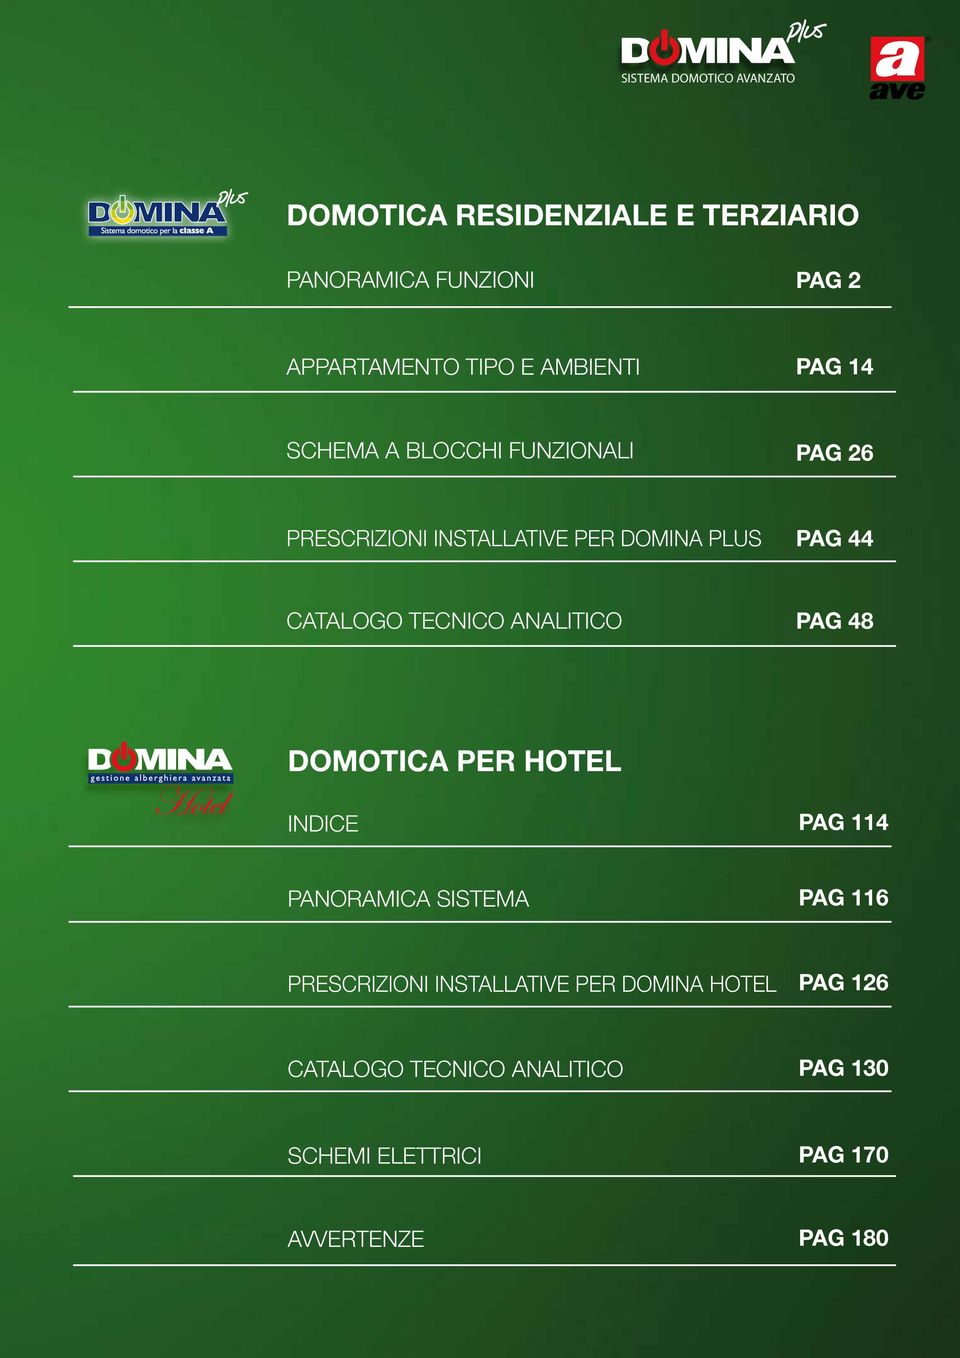 CATALOGO TECNICO ANALITICO PAG 48 DOMOTICA PER HOTEL INDICE PAG 114 PANORAMICA SISTEMA PAG 116 PRESCRIZIONI